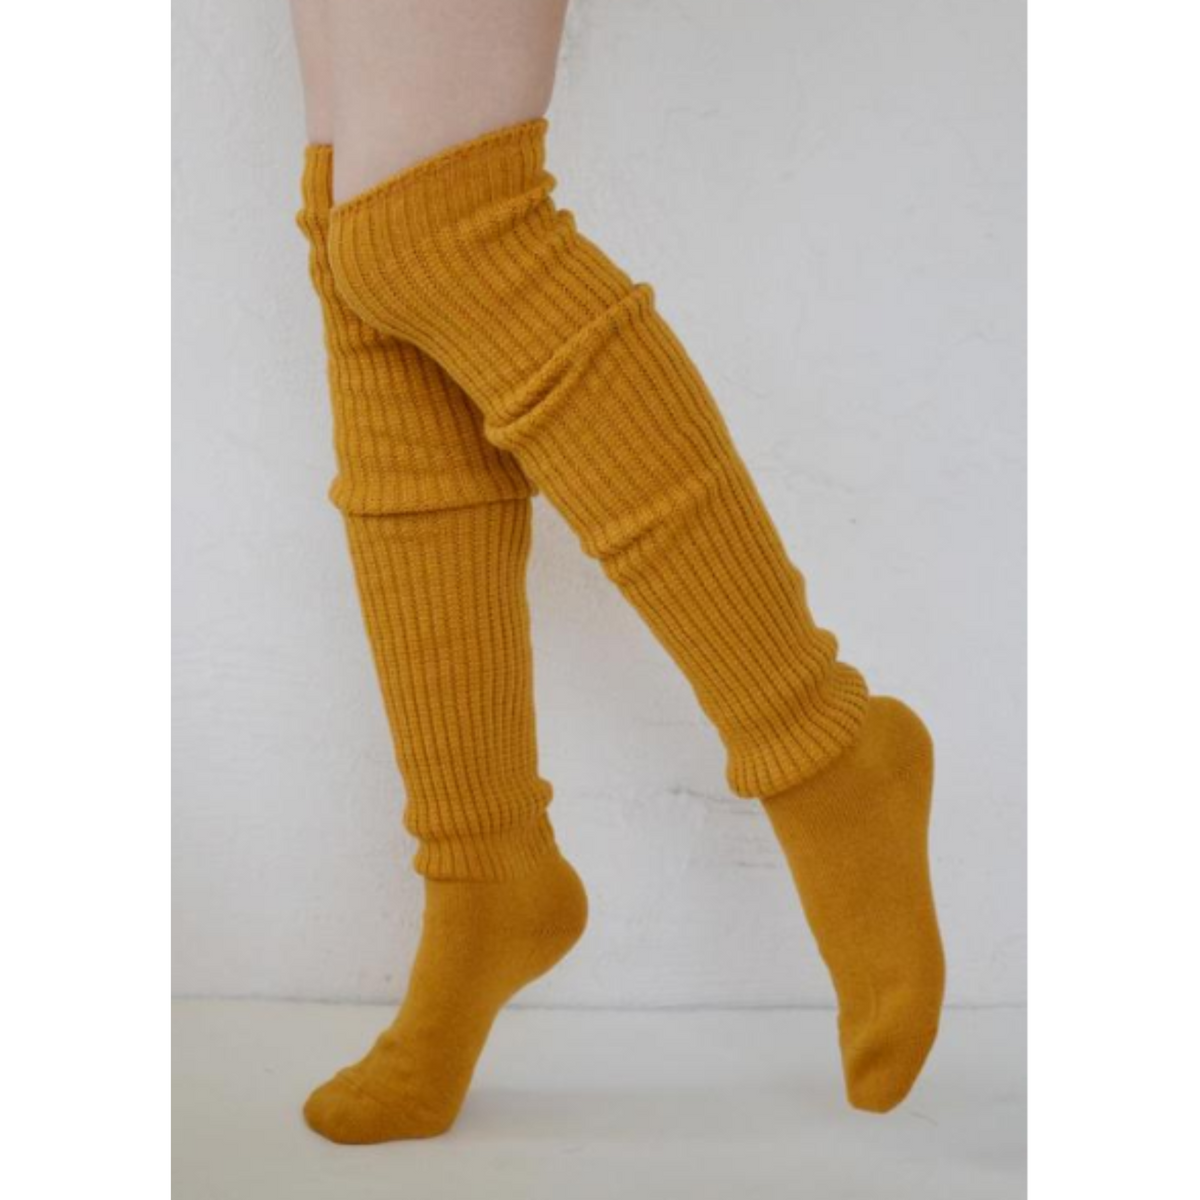 Tabbisocks Scrunchy Over the Knee women&#39;s socks shown in mustard color on model.